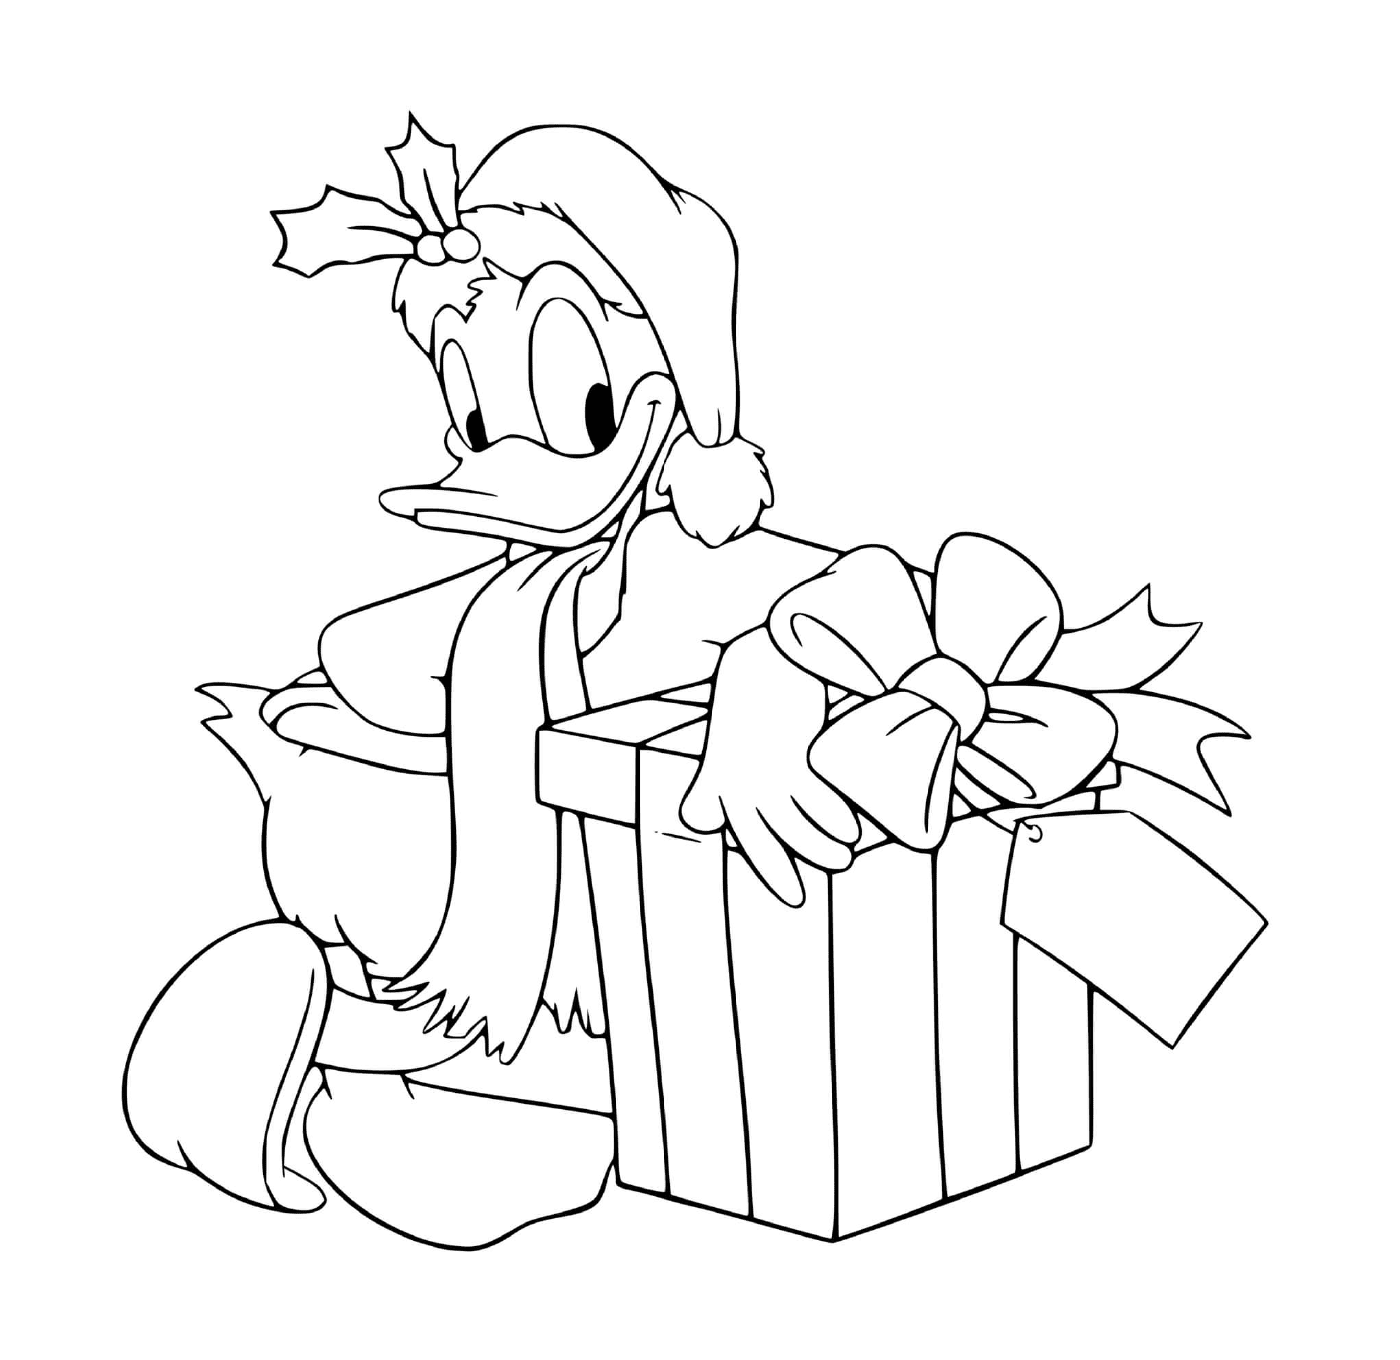  Donald junto a un regalo 